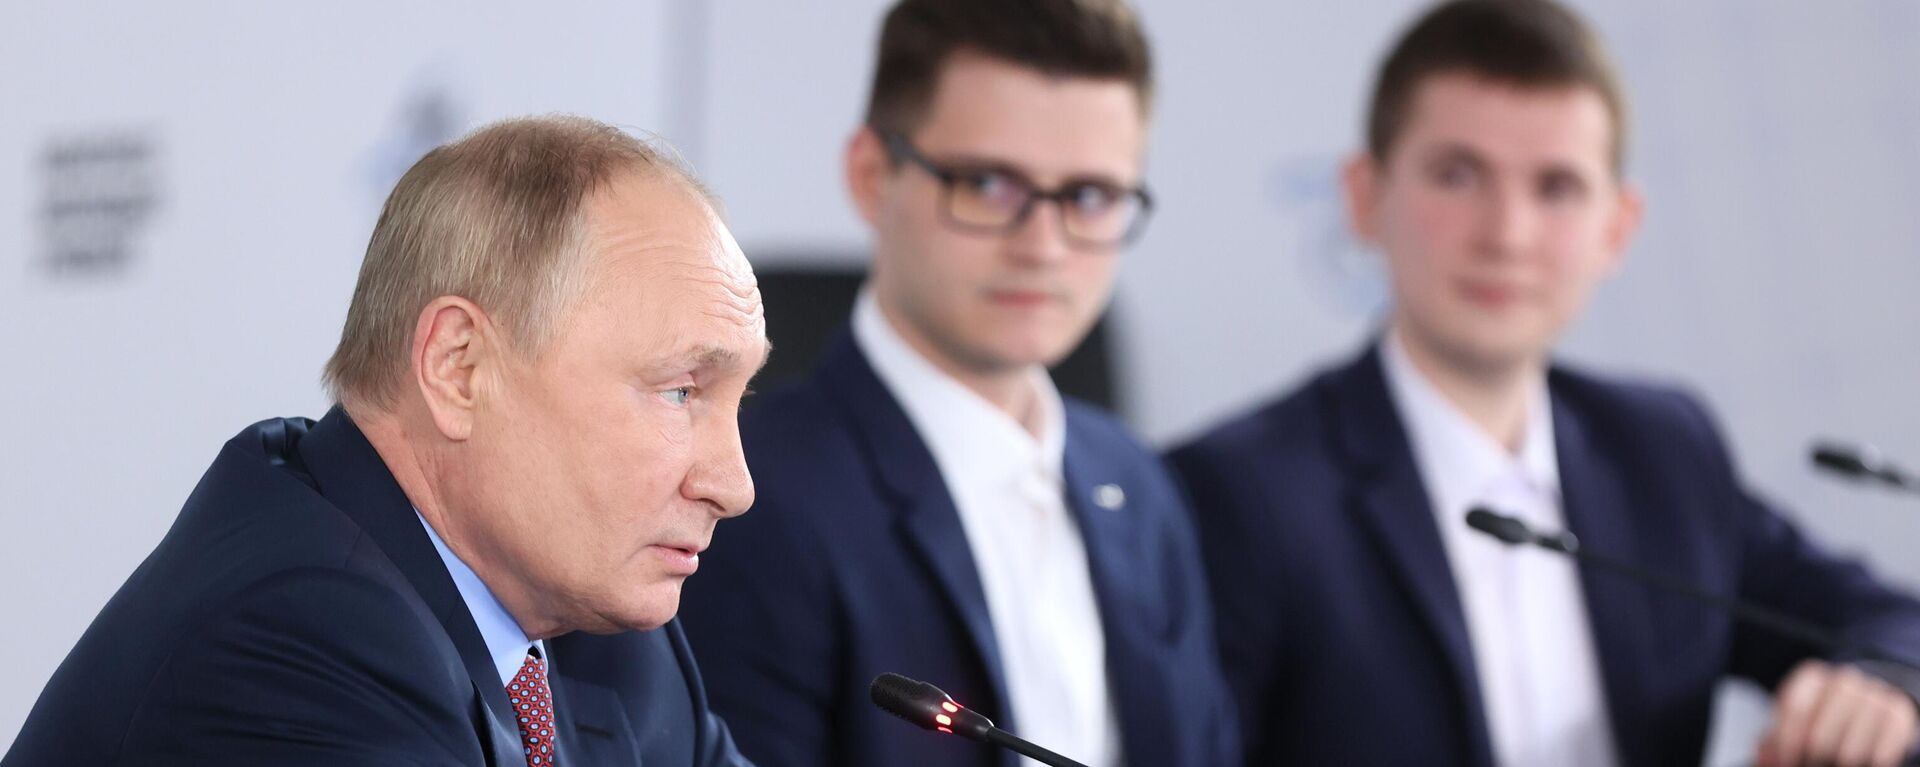 Vladimir Putin, presidente da Rússia, em encontro do Congresso de Jovens Cientistas, 8 de dezembro de 2021 - Sputnik Brasil, 1920, 08.12.2021